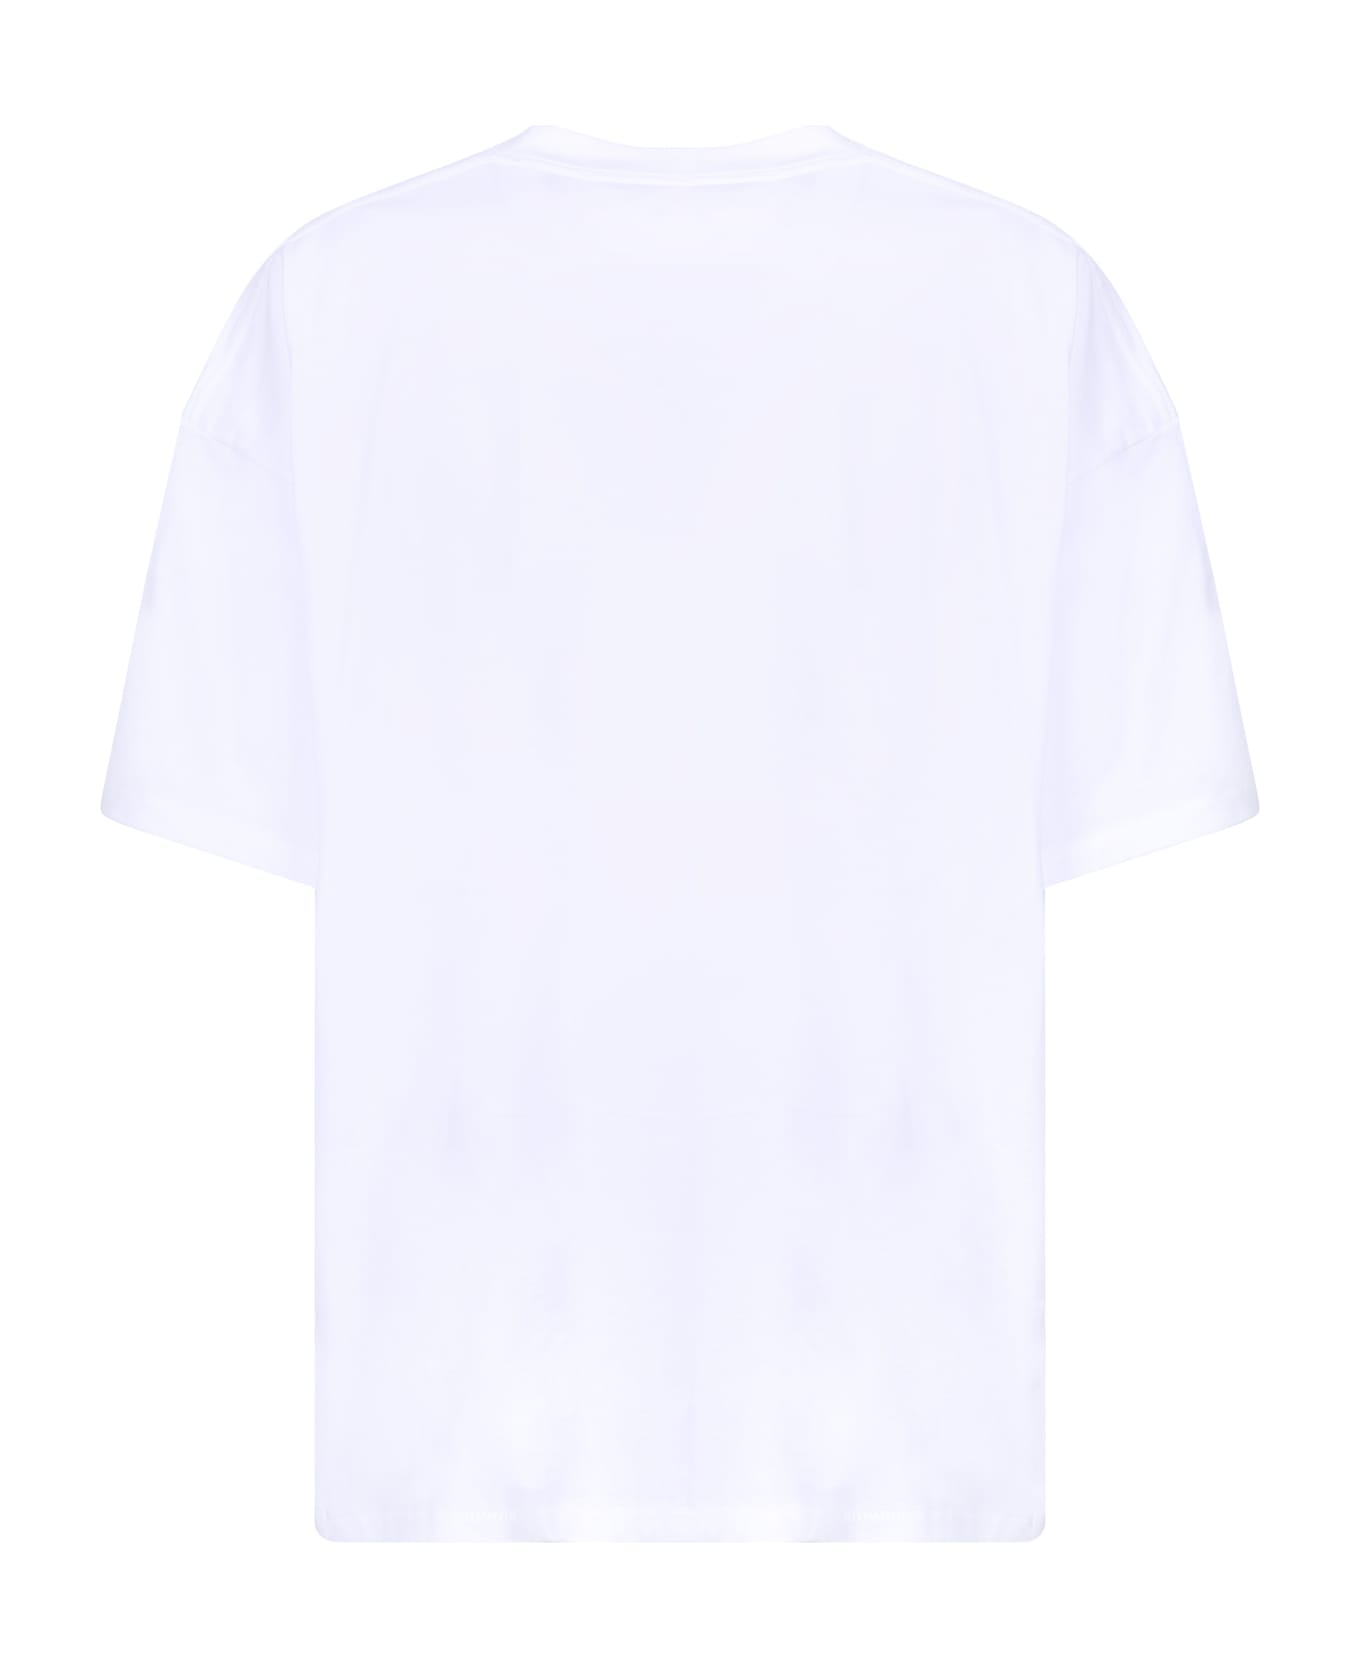 The Salvages Cotton Emblem T-shirt - White